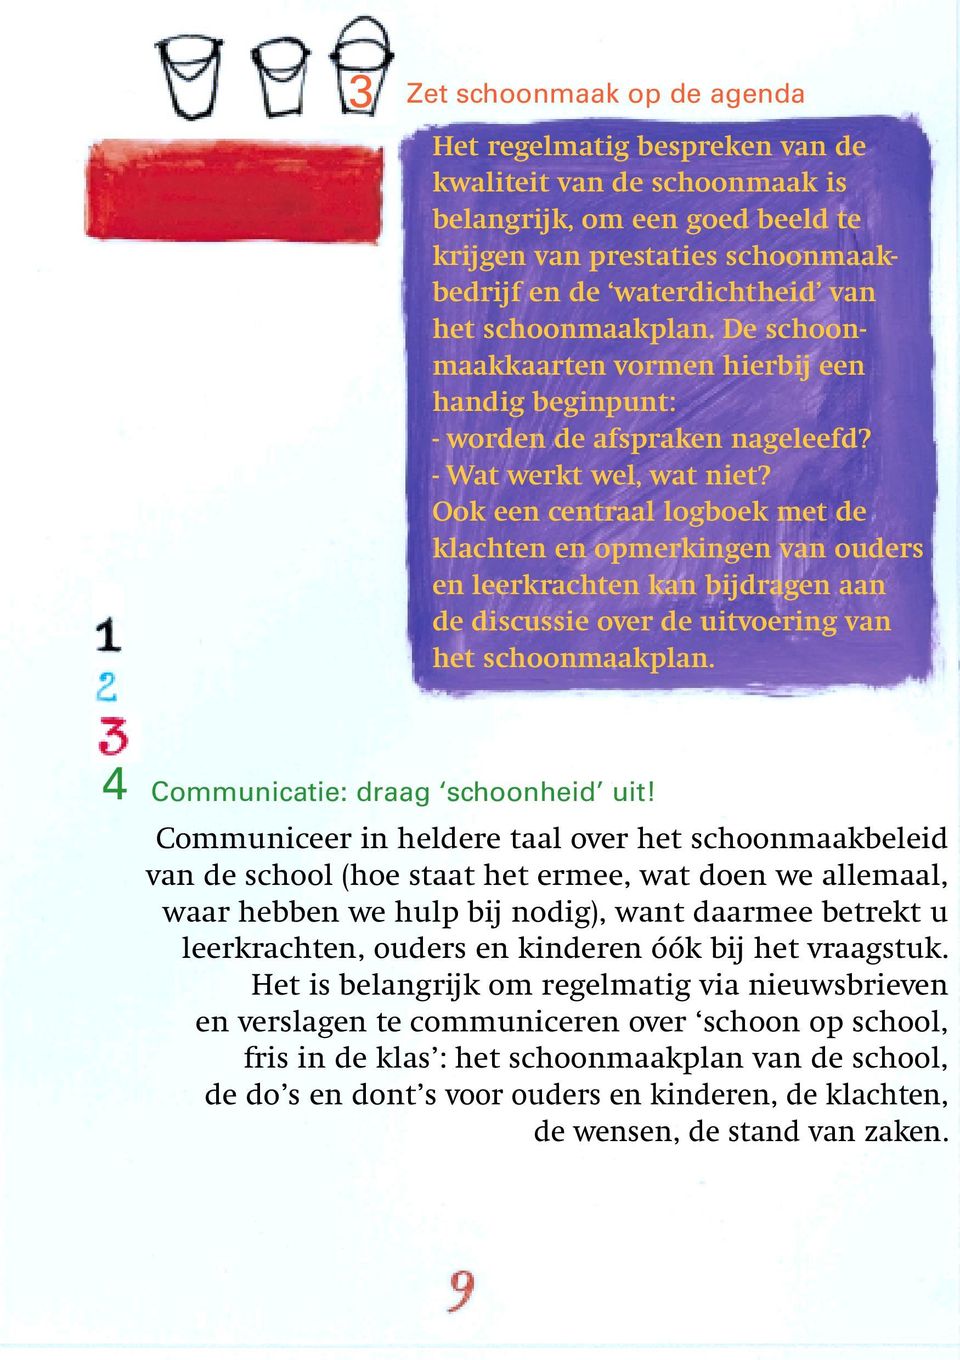 Ook een centraal logboek met de klachten en opmerkingen van ouders en leerkrachten kan bijdragen aan de discussie over de uitvoering van het schoonmaakplan. 4 Communicatie: draag schoonheid uit!